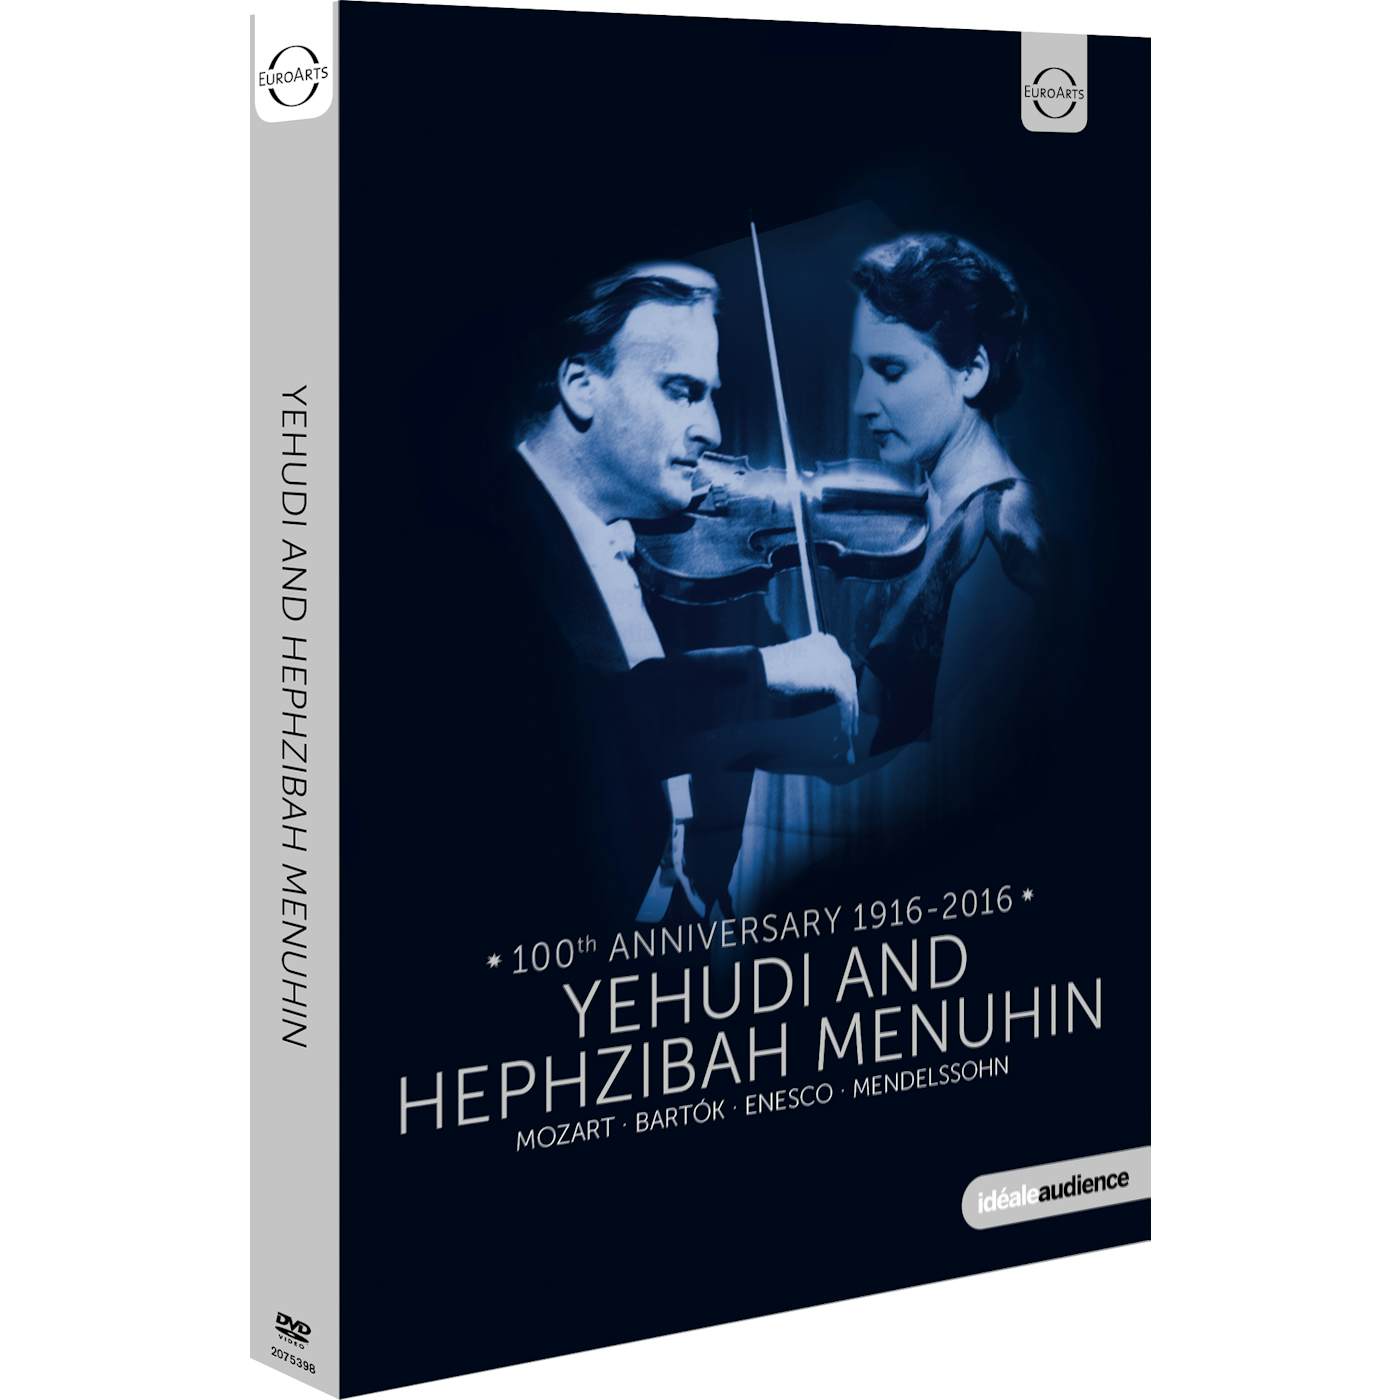 Yehudi Menuhin YEHUDI & HEPHZIBAH MENUHIN DVD